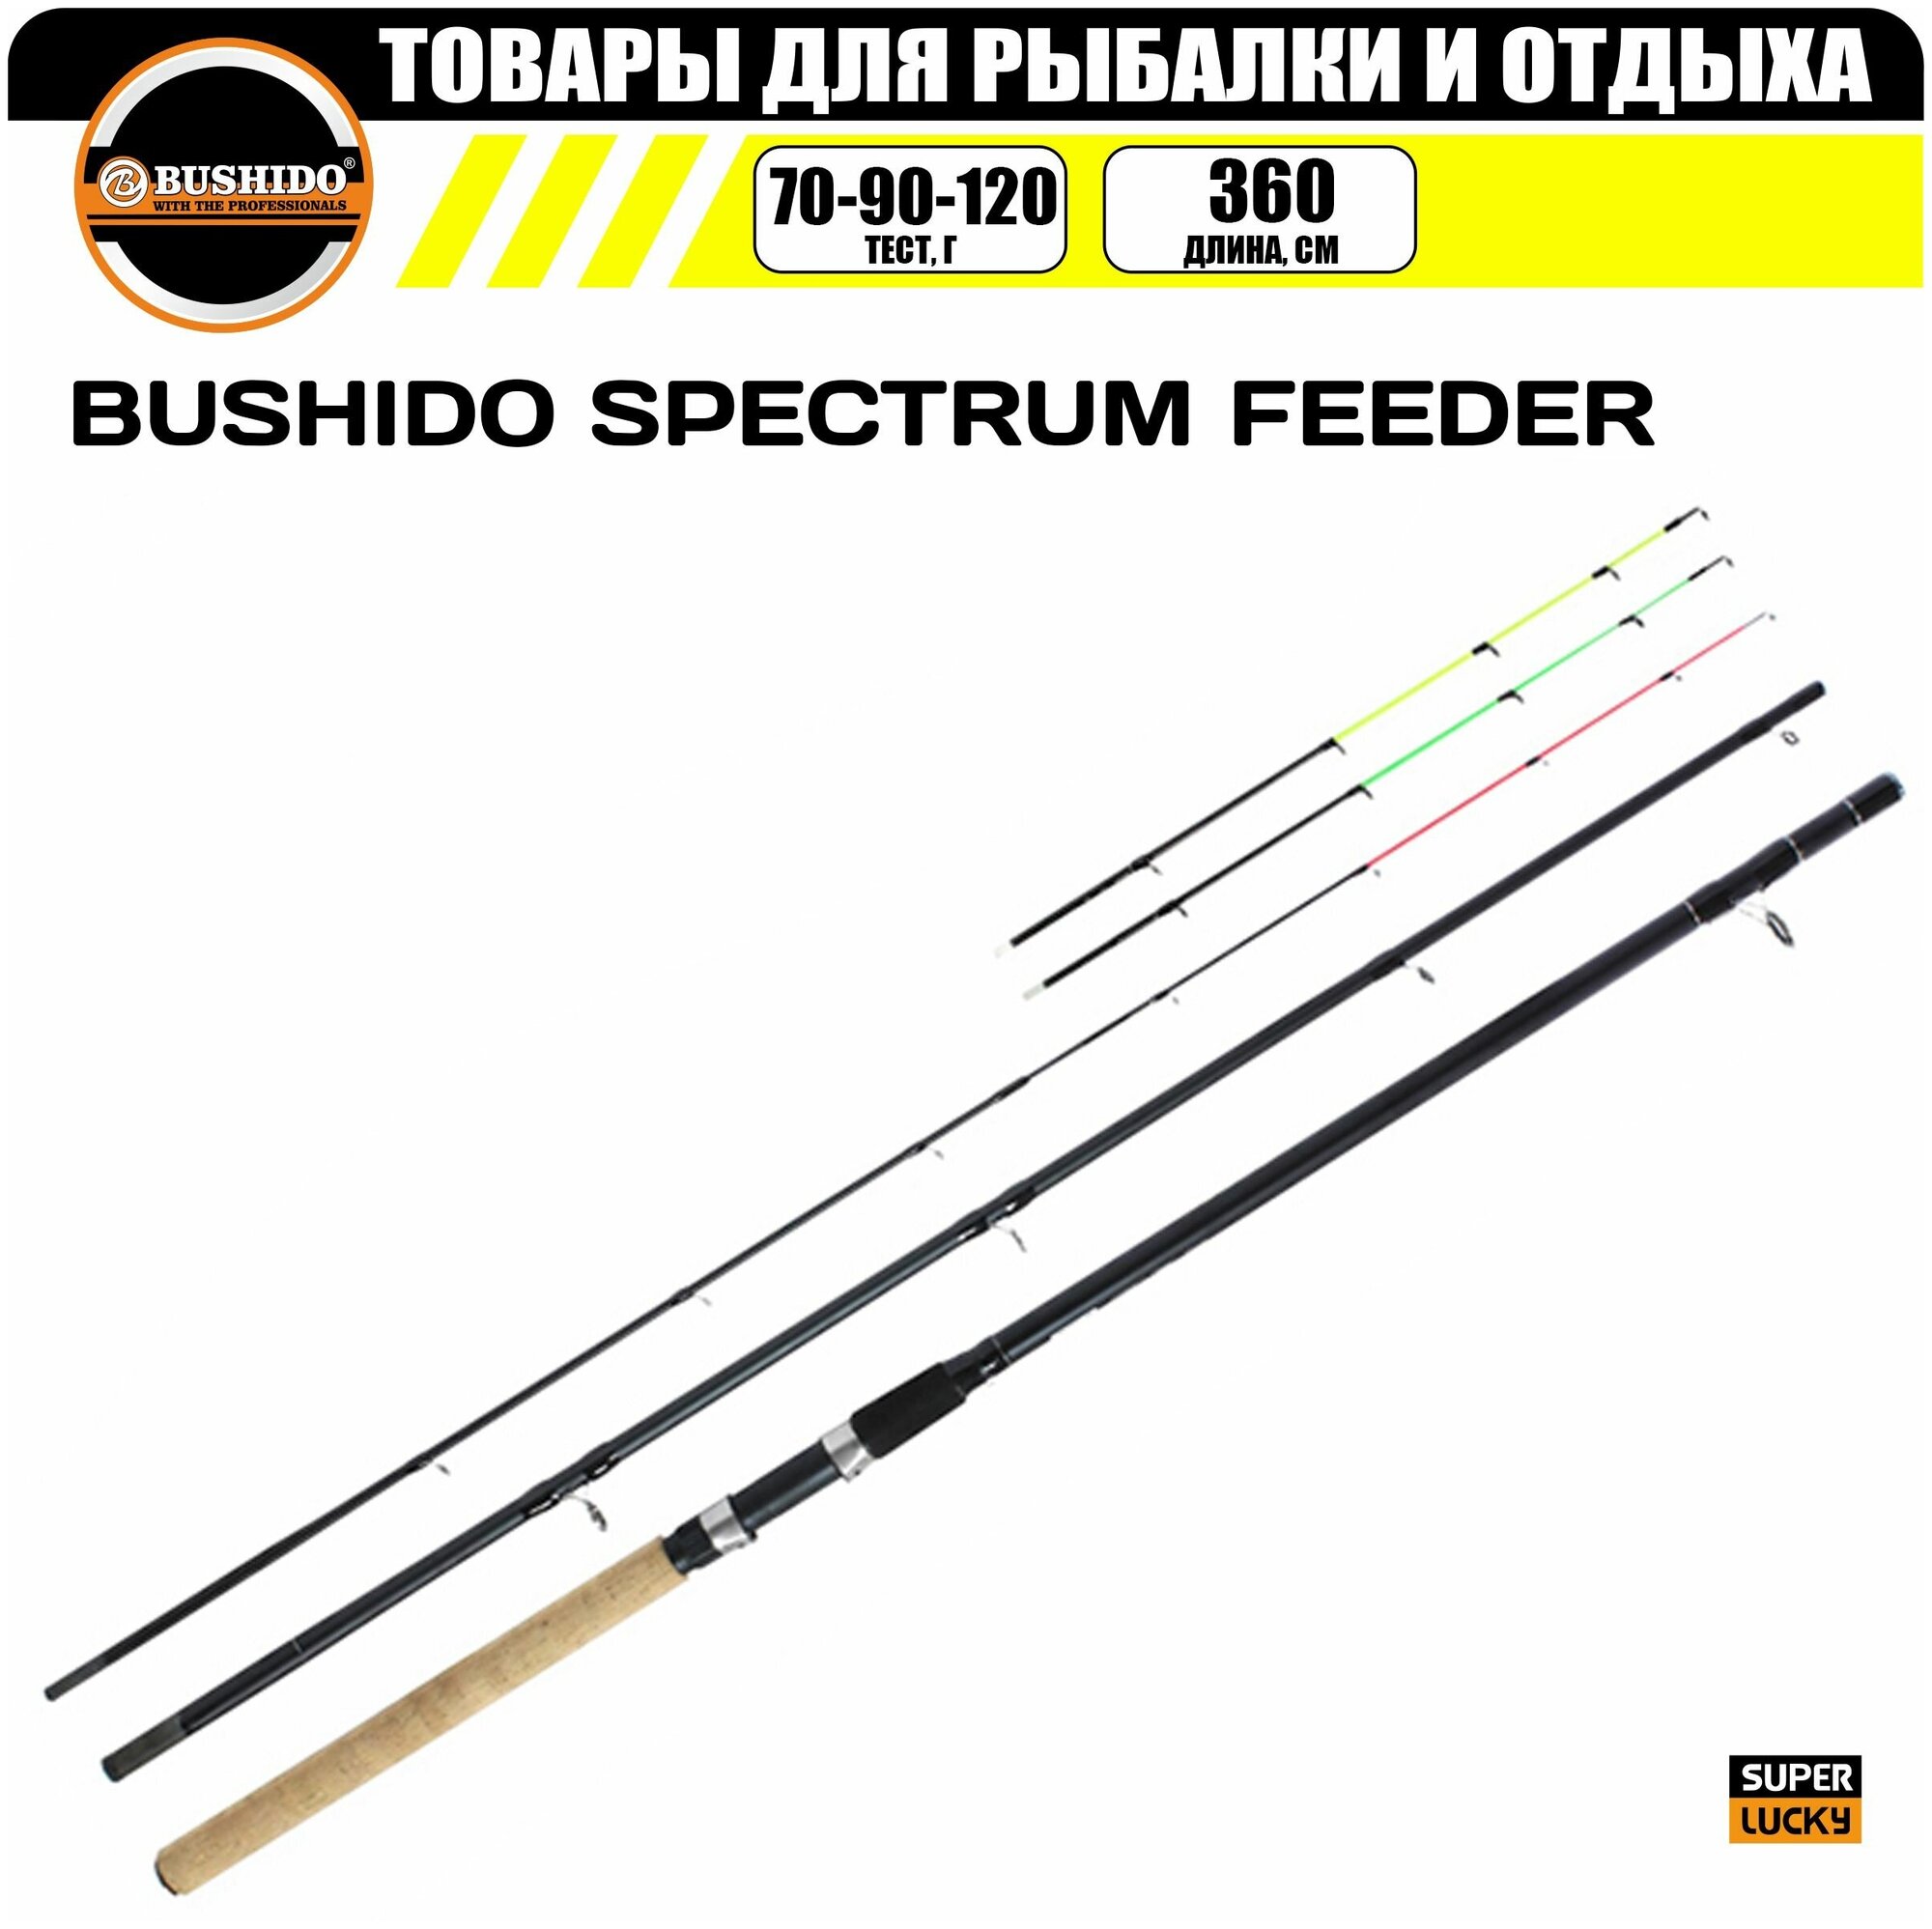 Удилище фидерное BUSHIDO SPECTRUM FEEDER 3.6метра (70-90-120гр), для рыбалки, рыболовное, штекерная конструкция, фидер, cредне-быстрый (regular fast)